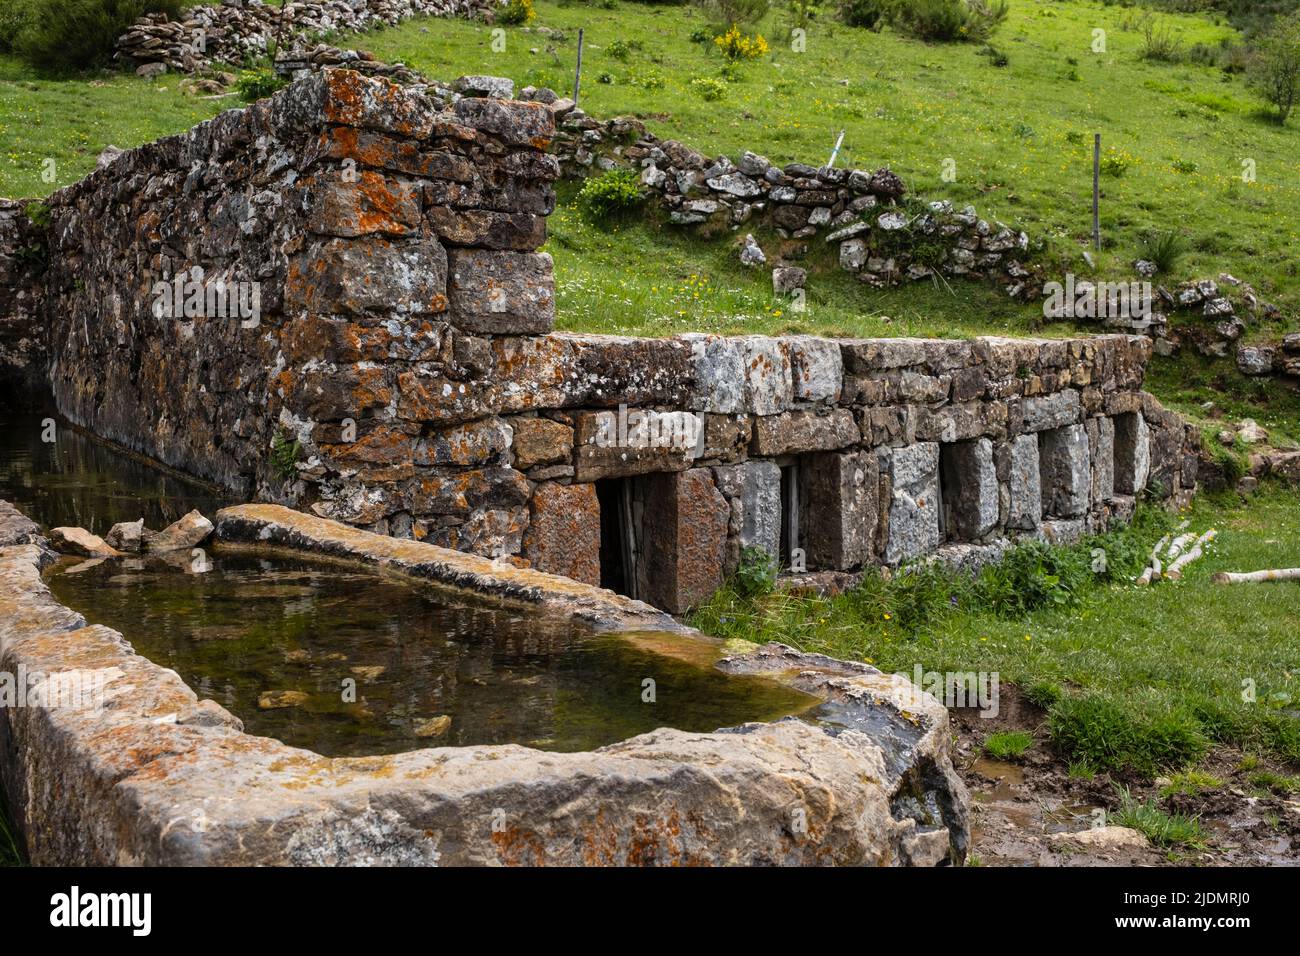 Spagna, Asturie. Parco Naturale di Somiedo. L'acqua fredda della sorgente della montagna raffredda il latte immagazzinato nei contenitori nel muro di pietra. Braña de Mumian. Foto Stock